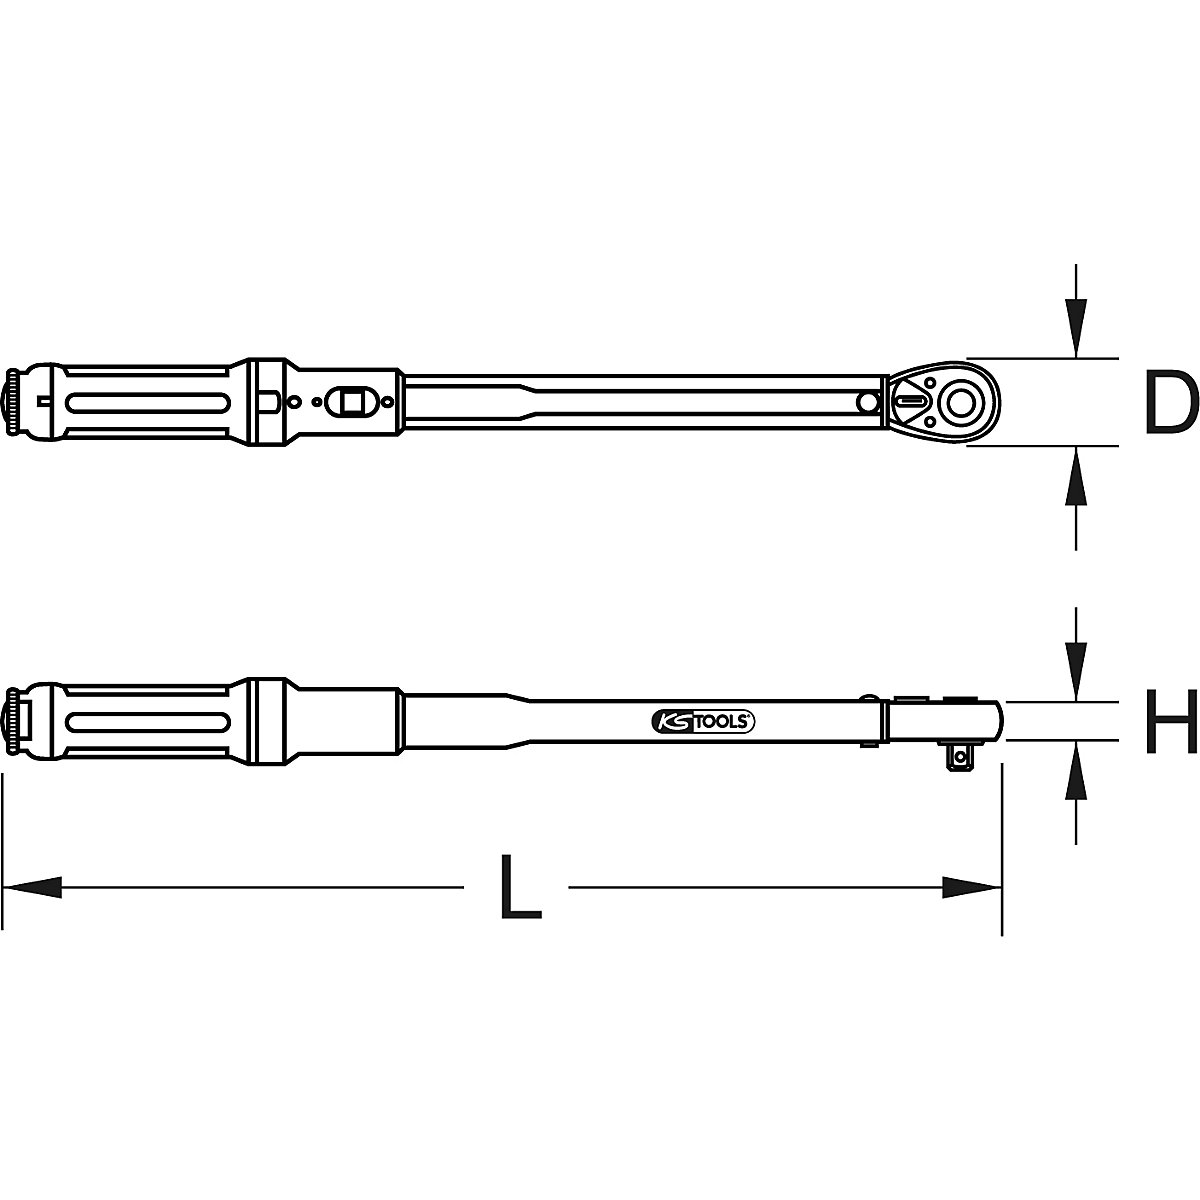 Chiave dinamometrica ERGOTORQUE®precision con testa a cricco reversibile – KS Tools (Foto prodotto 4)-3